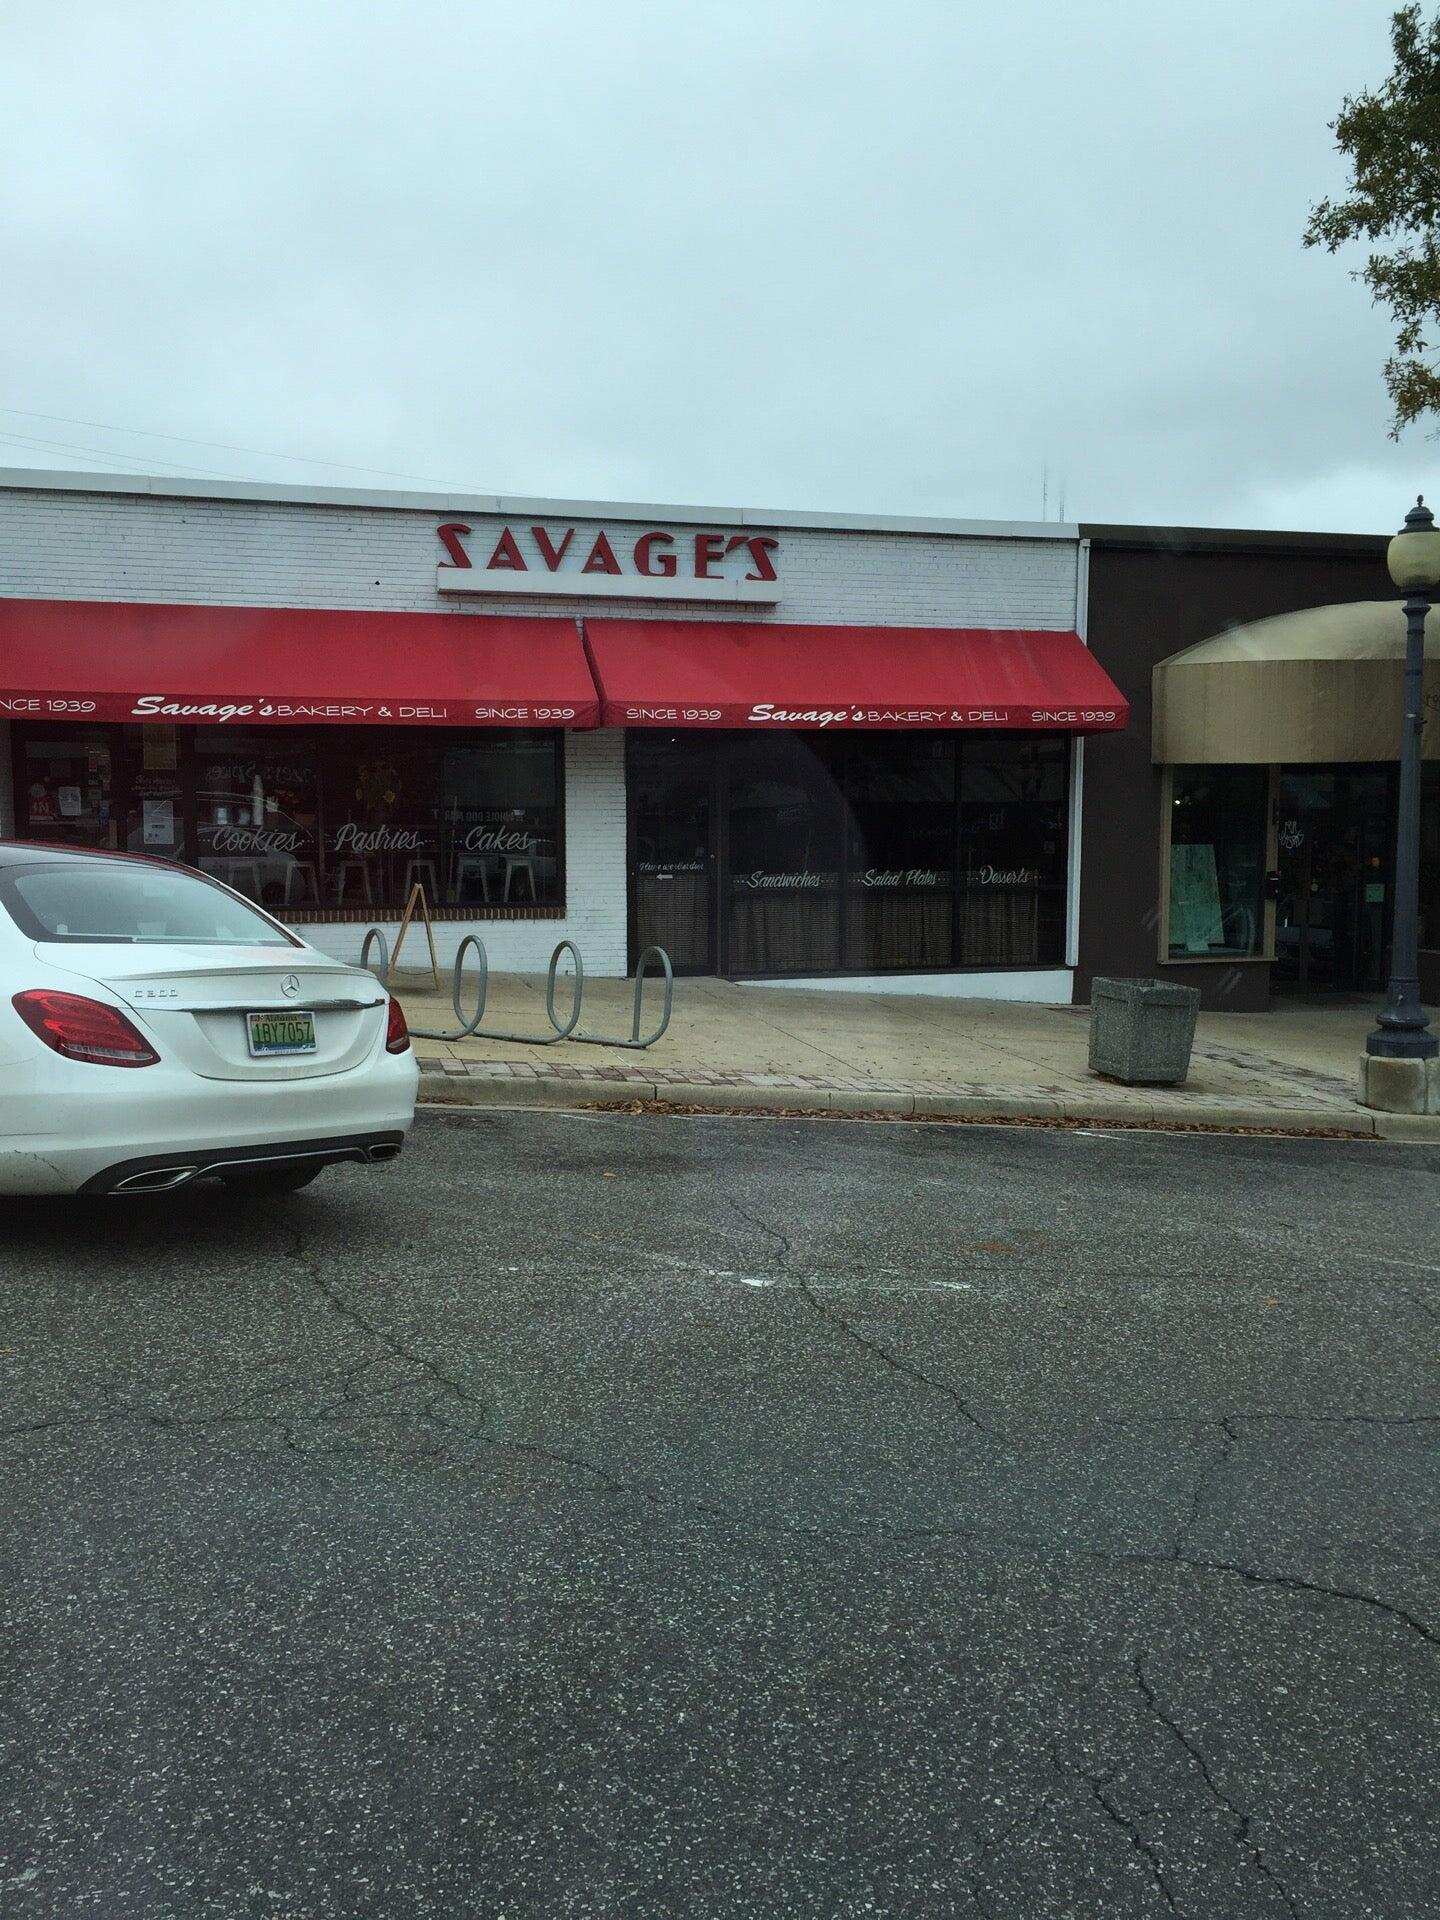 Savage's Bakery